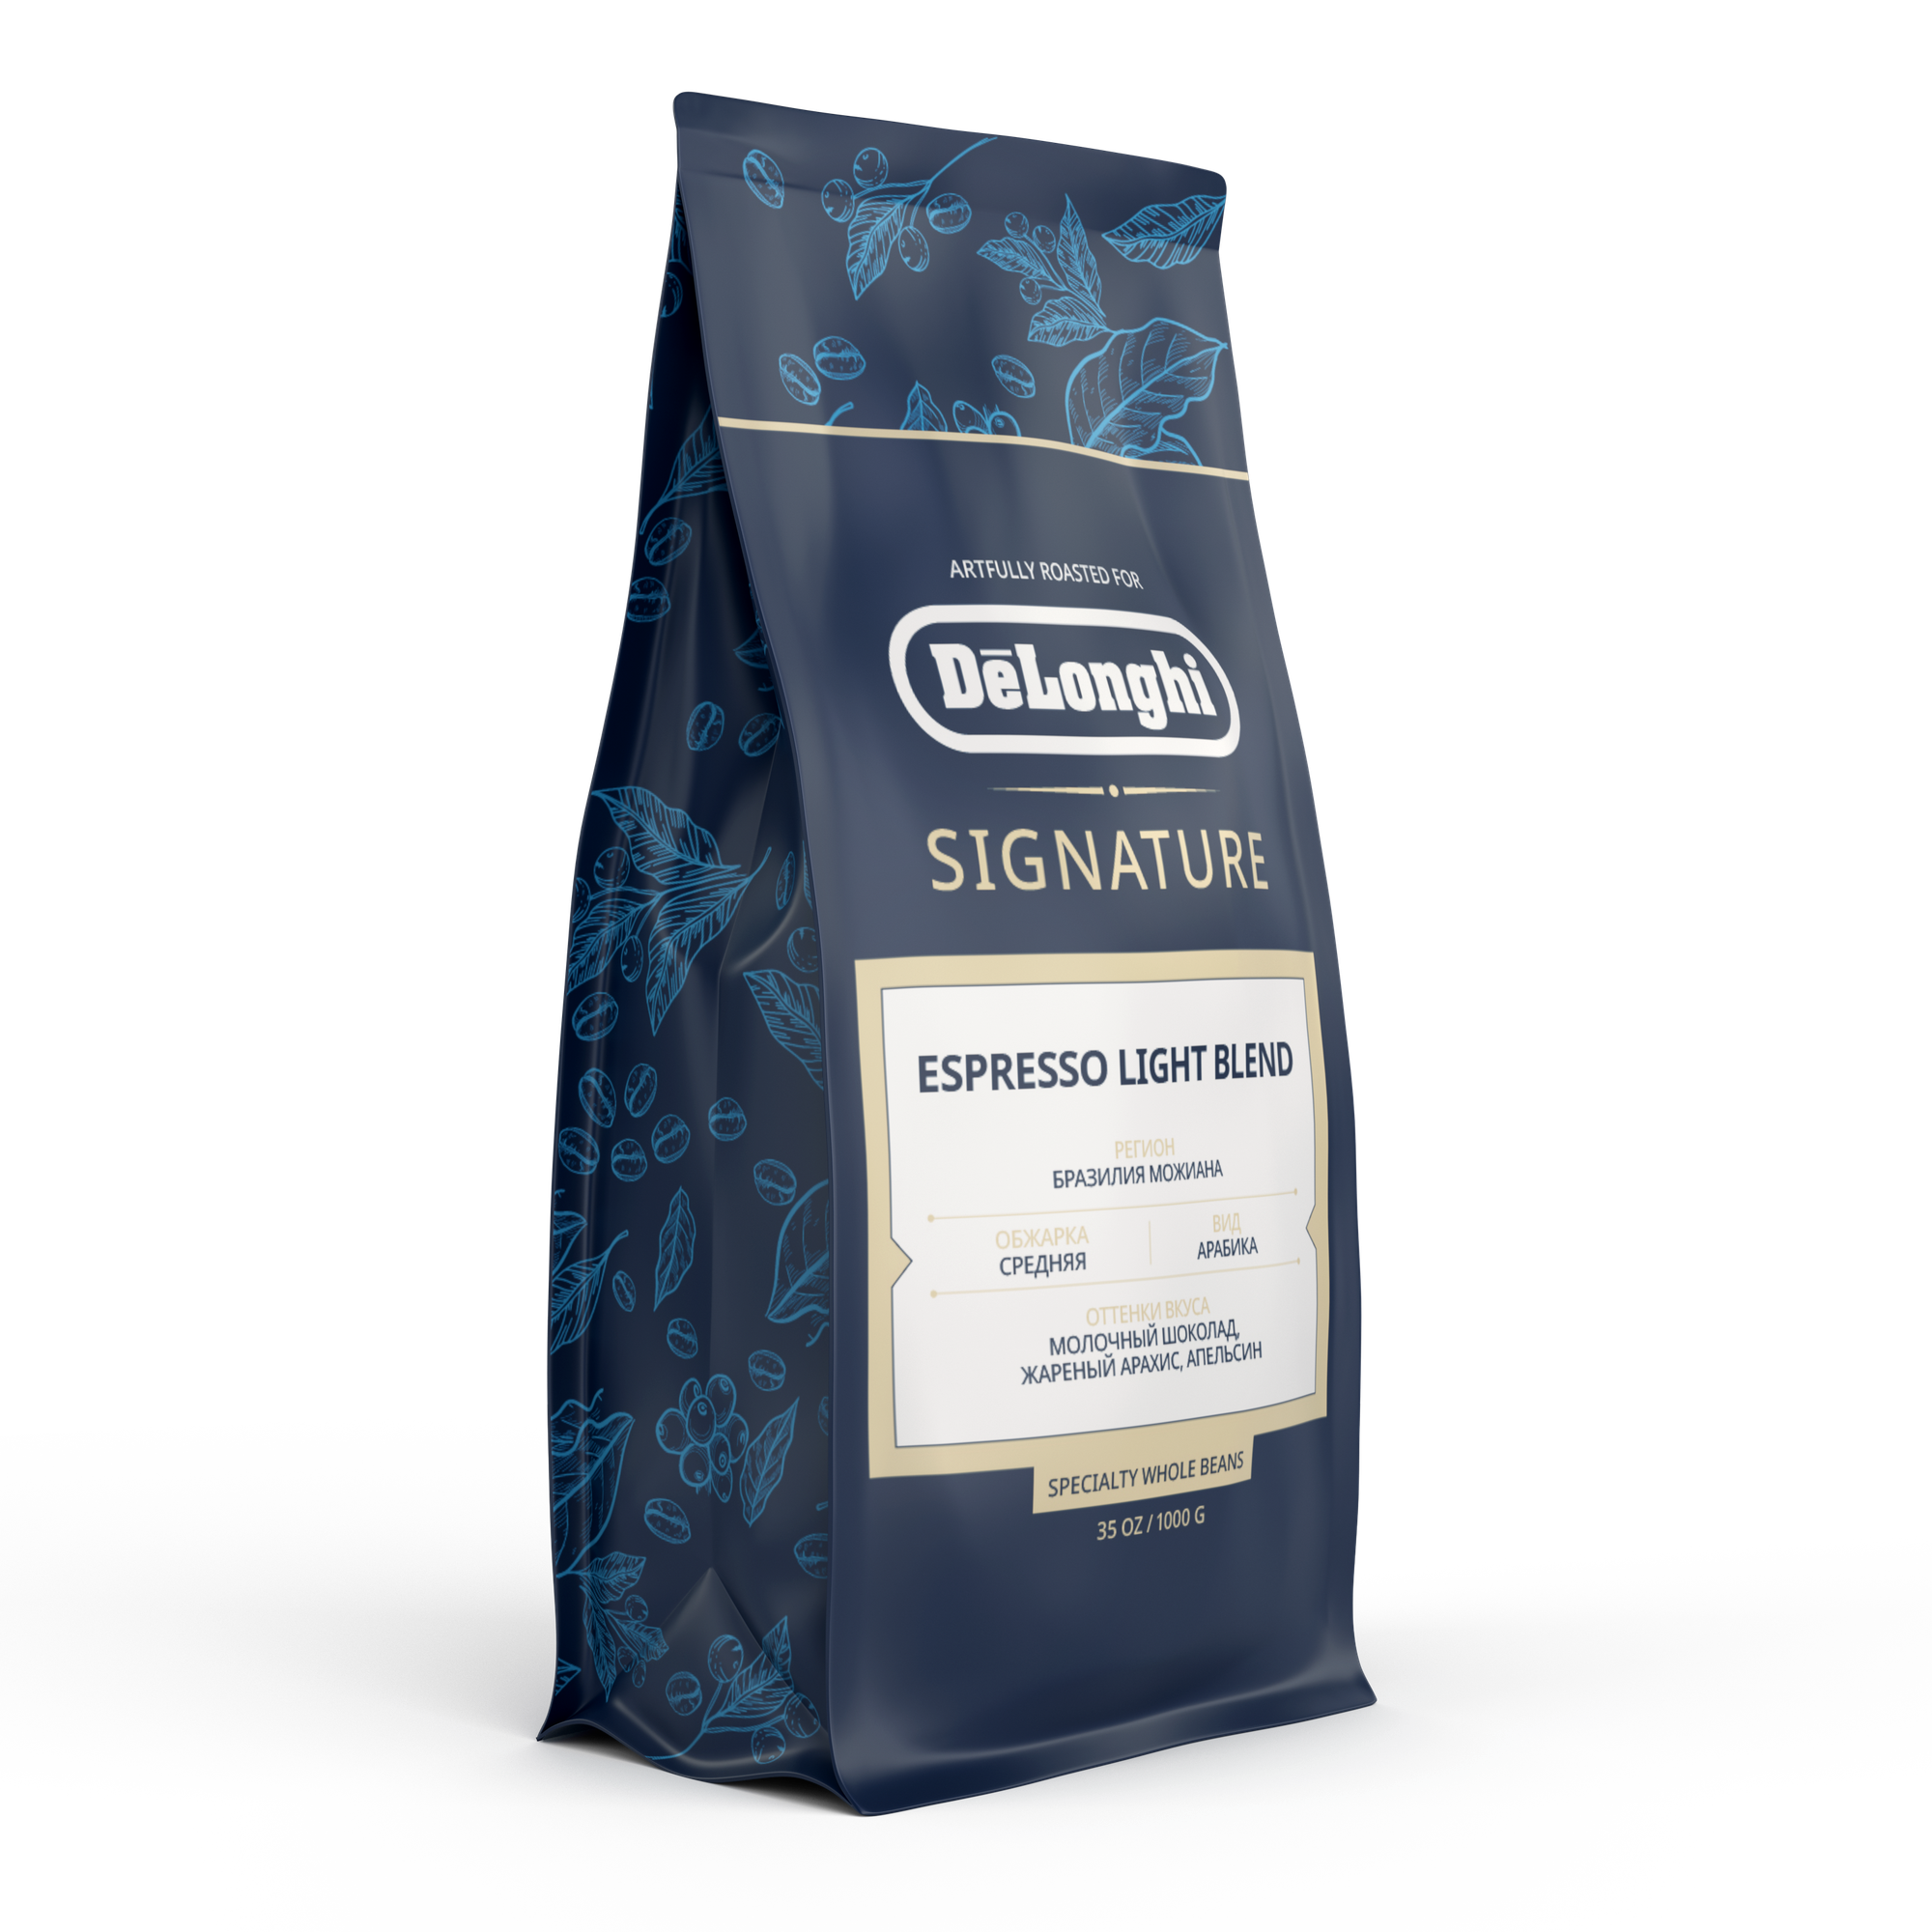 DeLonghi кофе Signature Espresso Light 1 кг